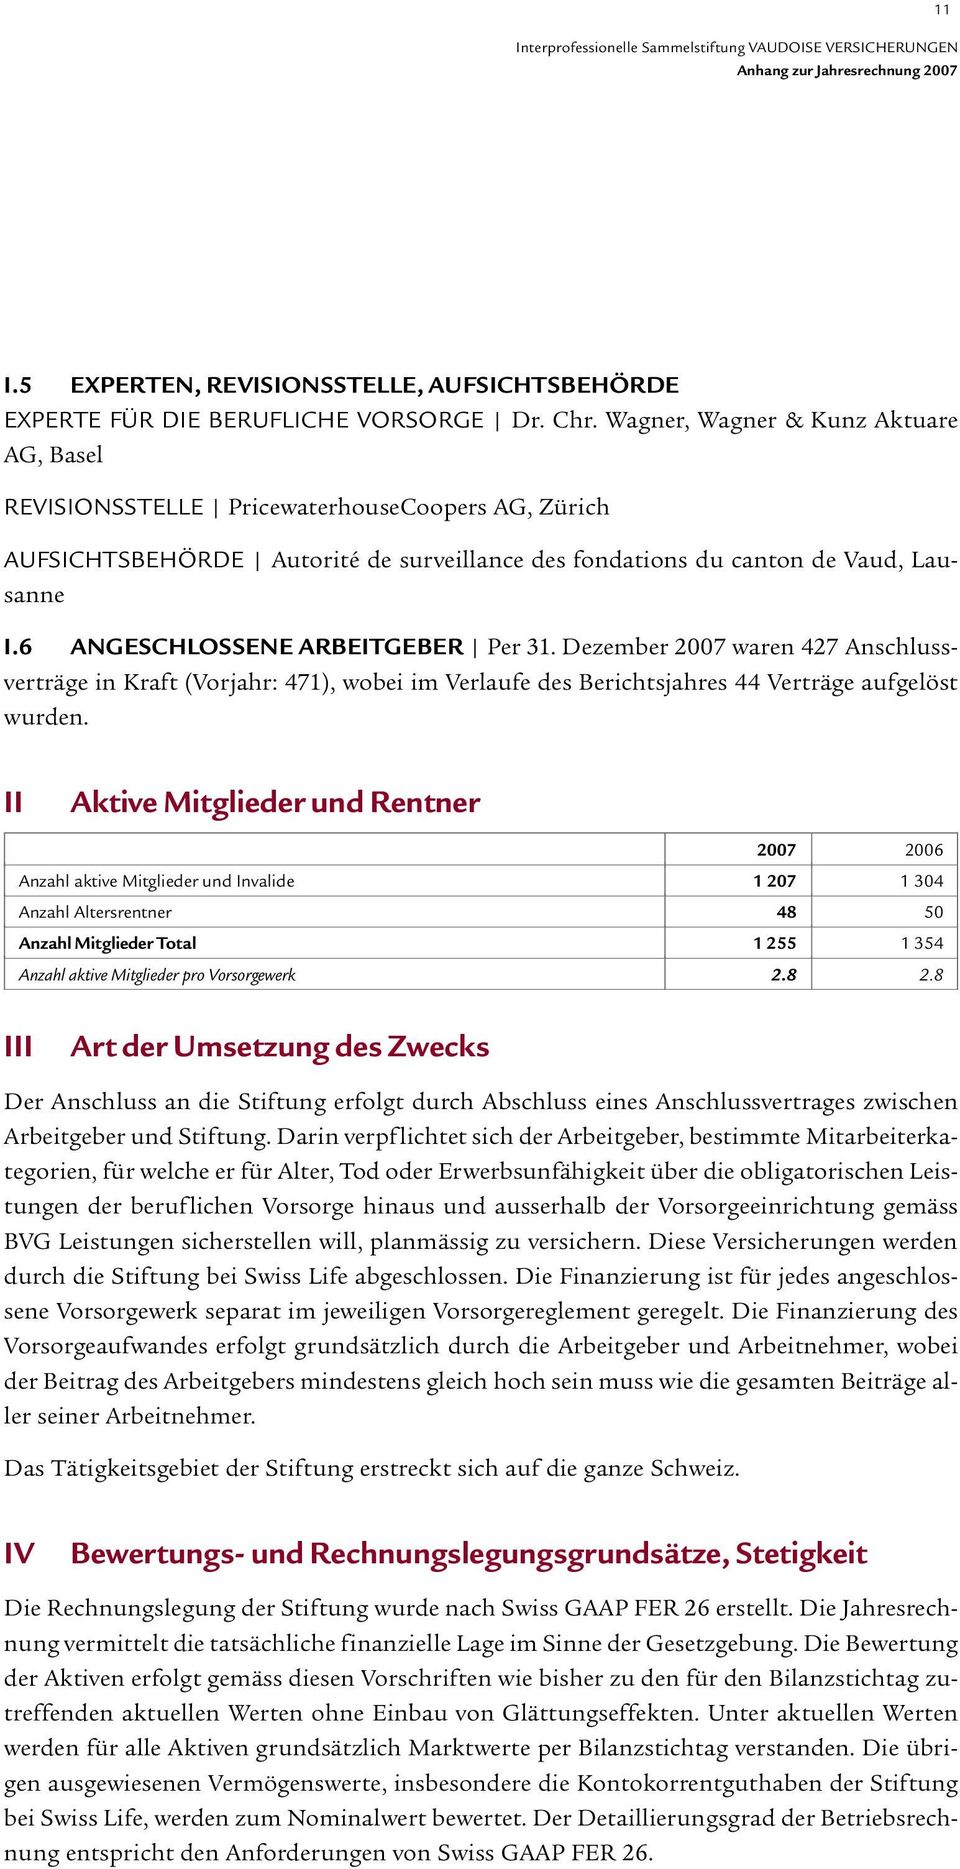 6 ANGESCHLOSSENE ARBEITGEBER Per 31. Dezember 2007 waren 427 Anschlussverträge in Kraft (Vorjahr: 471), wobei im Verlaufe des Berichtsjahres 44 Verträge aufgelöst wurden.